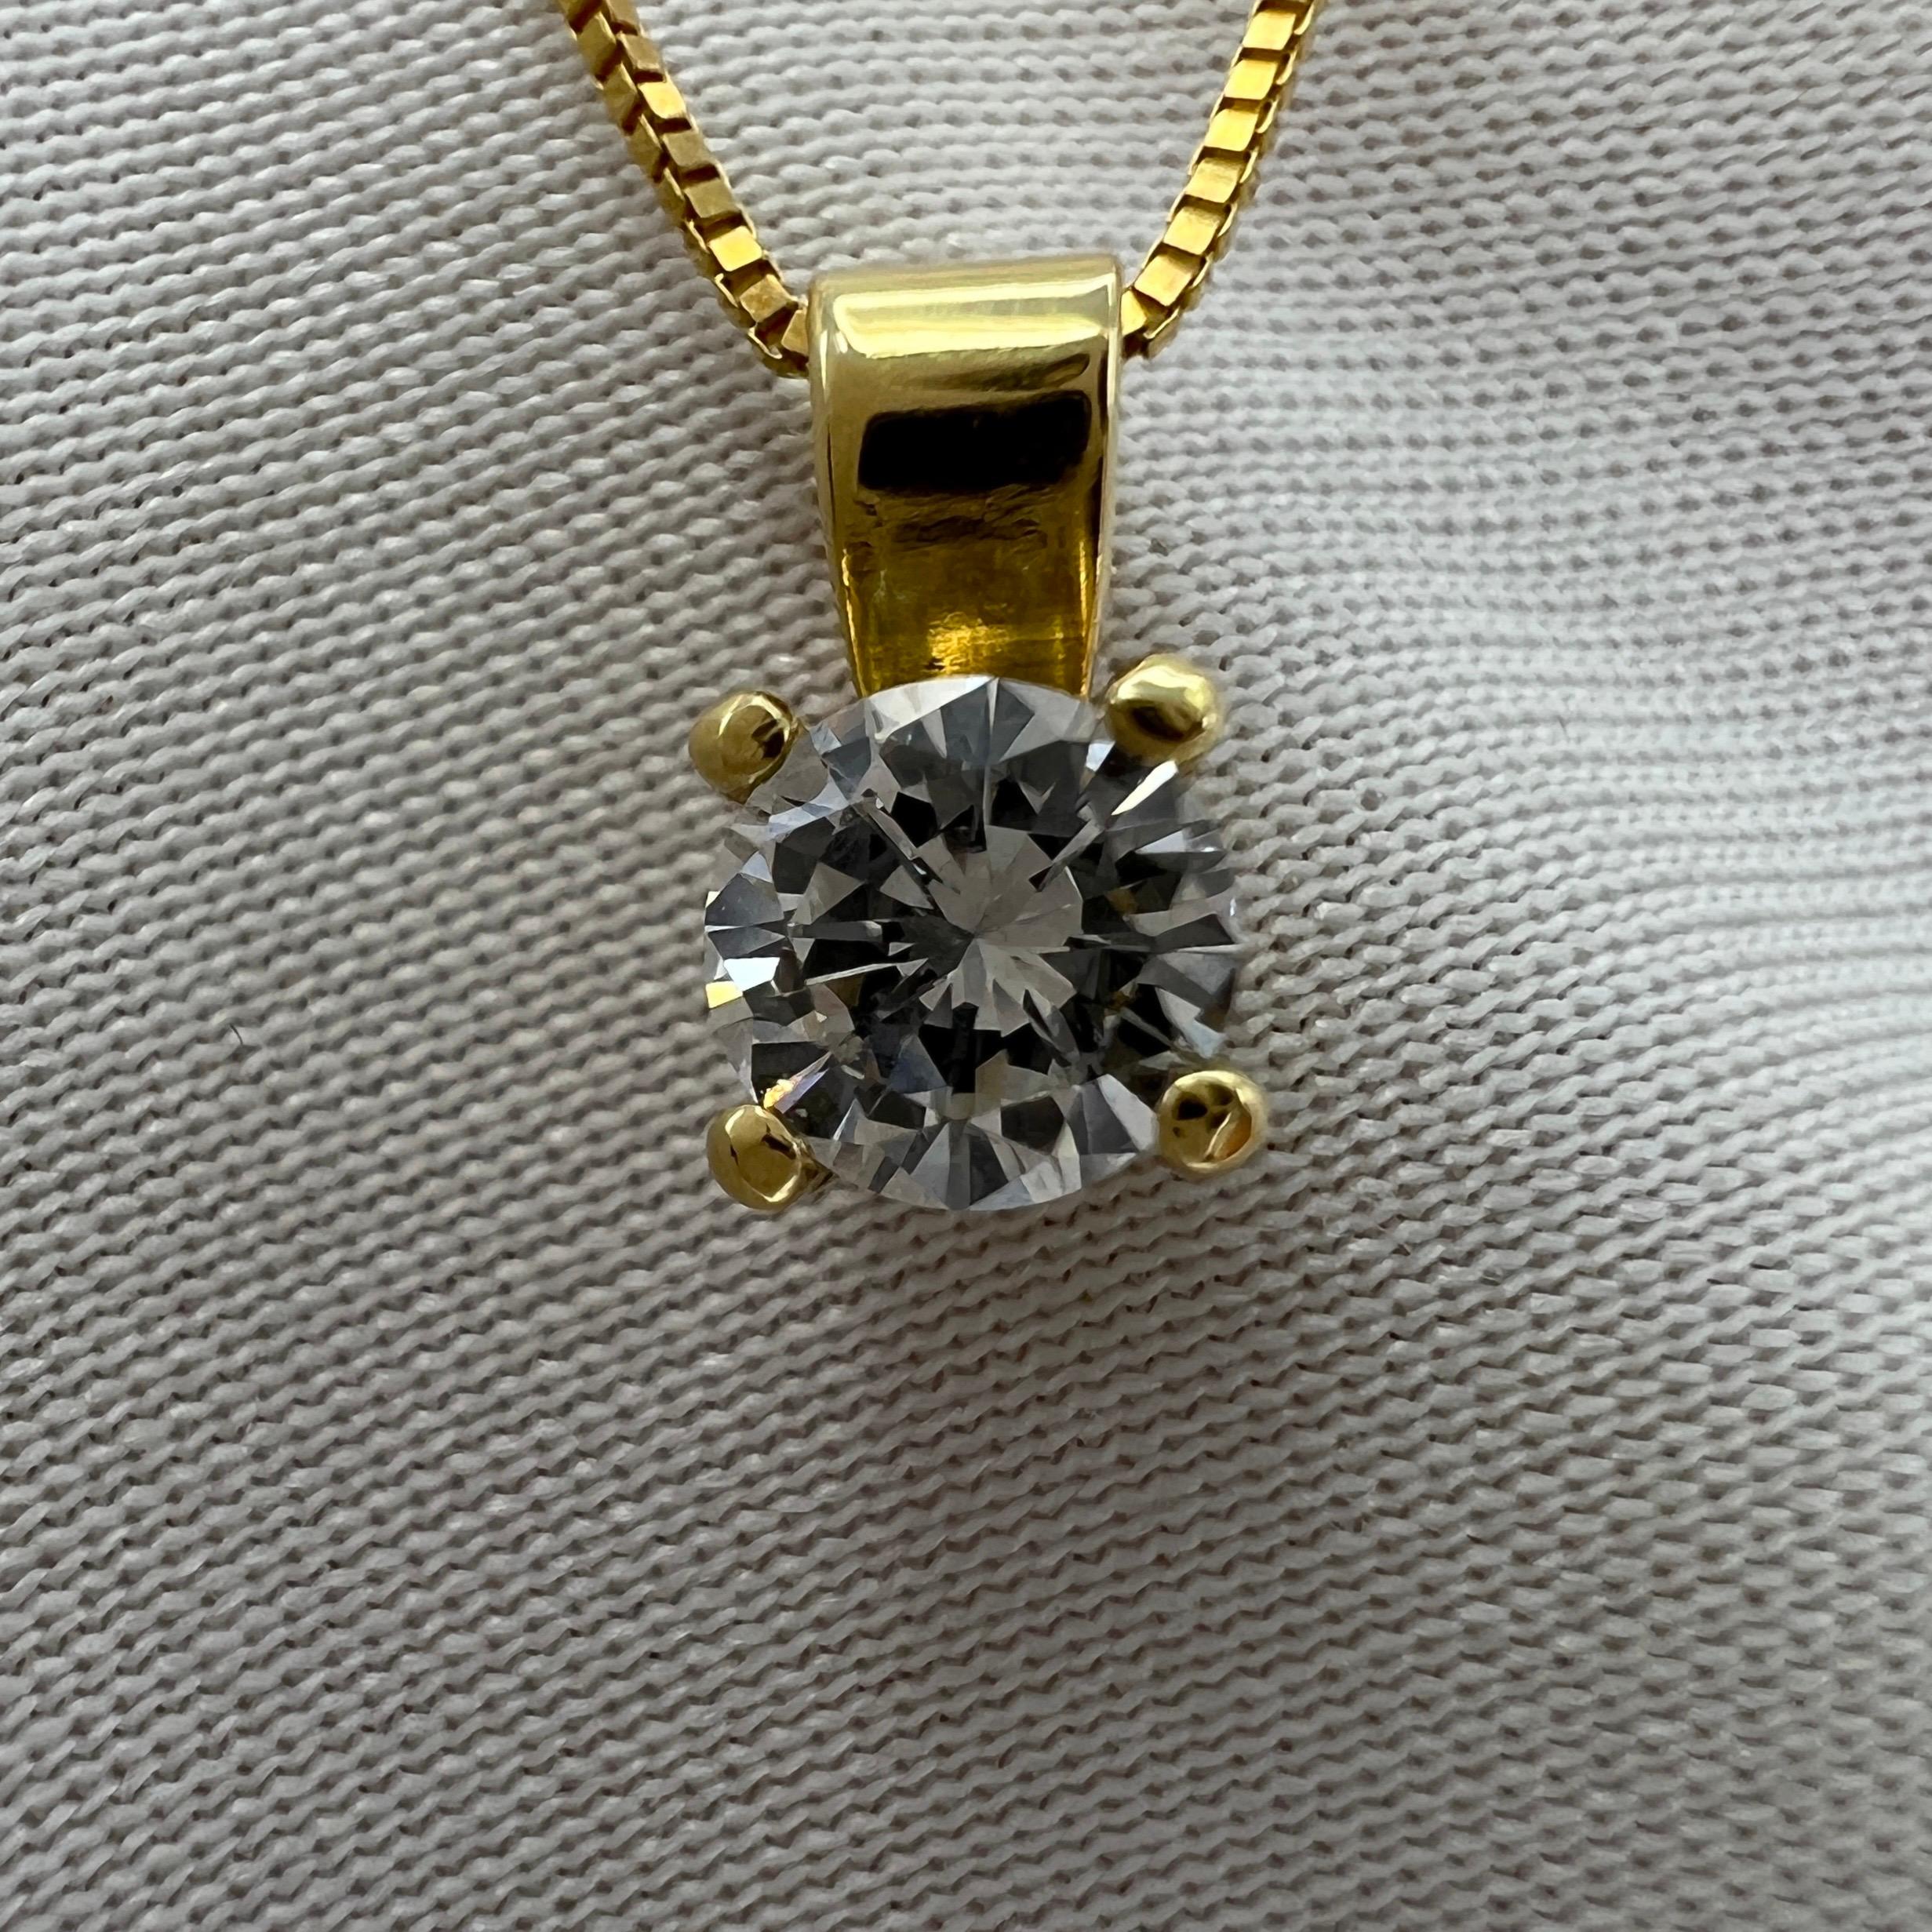 Collier pendentif solitaire en or jaune 18 carats avec diamant blanc naturel de taille ronde.

0.diamant de 27 carats dont la couleur et la clarté sont excellentes. 
Couleur E/F et pureté VS2. Très propre et très blanc. Elle possède également une